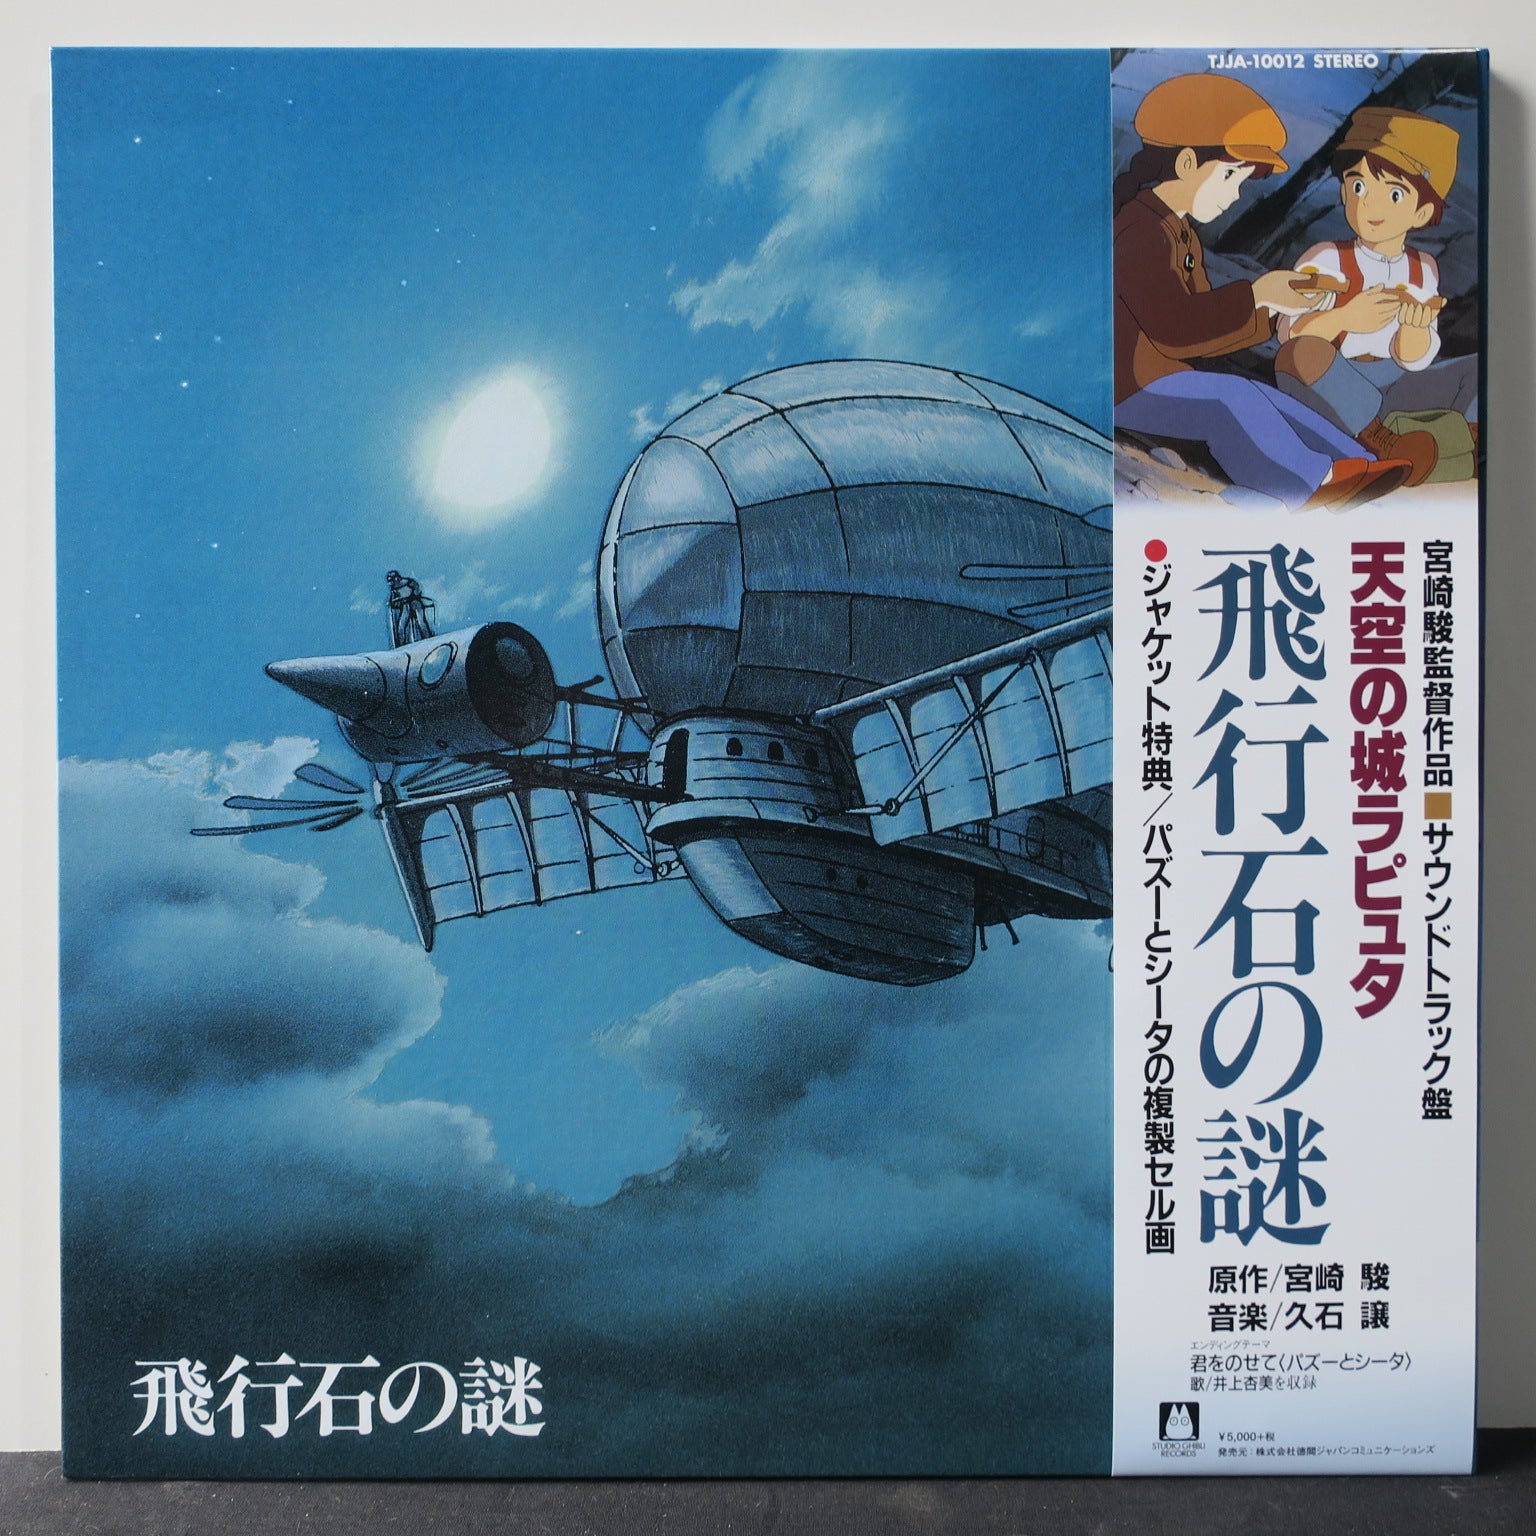 LAPUTA: CASTLE IN THE SKY' Studio Ghibli Soundtrack Vinyl LP